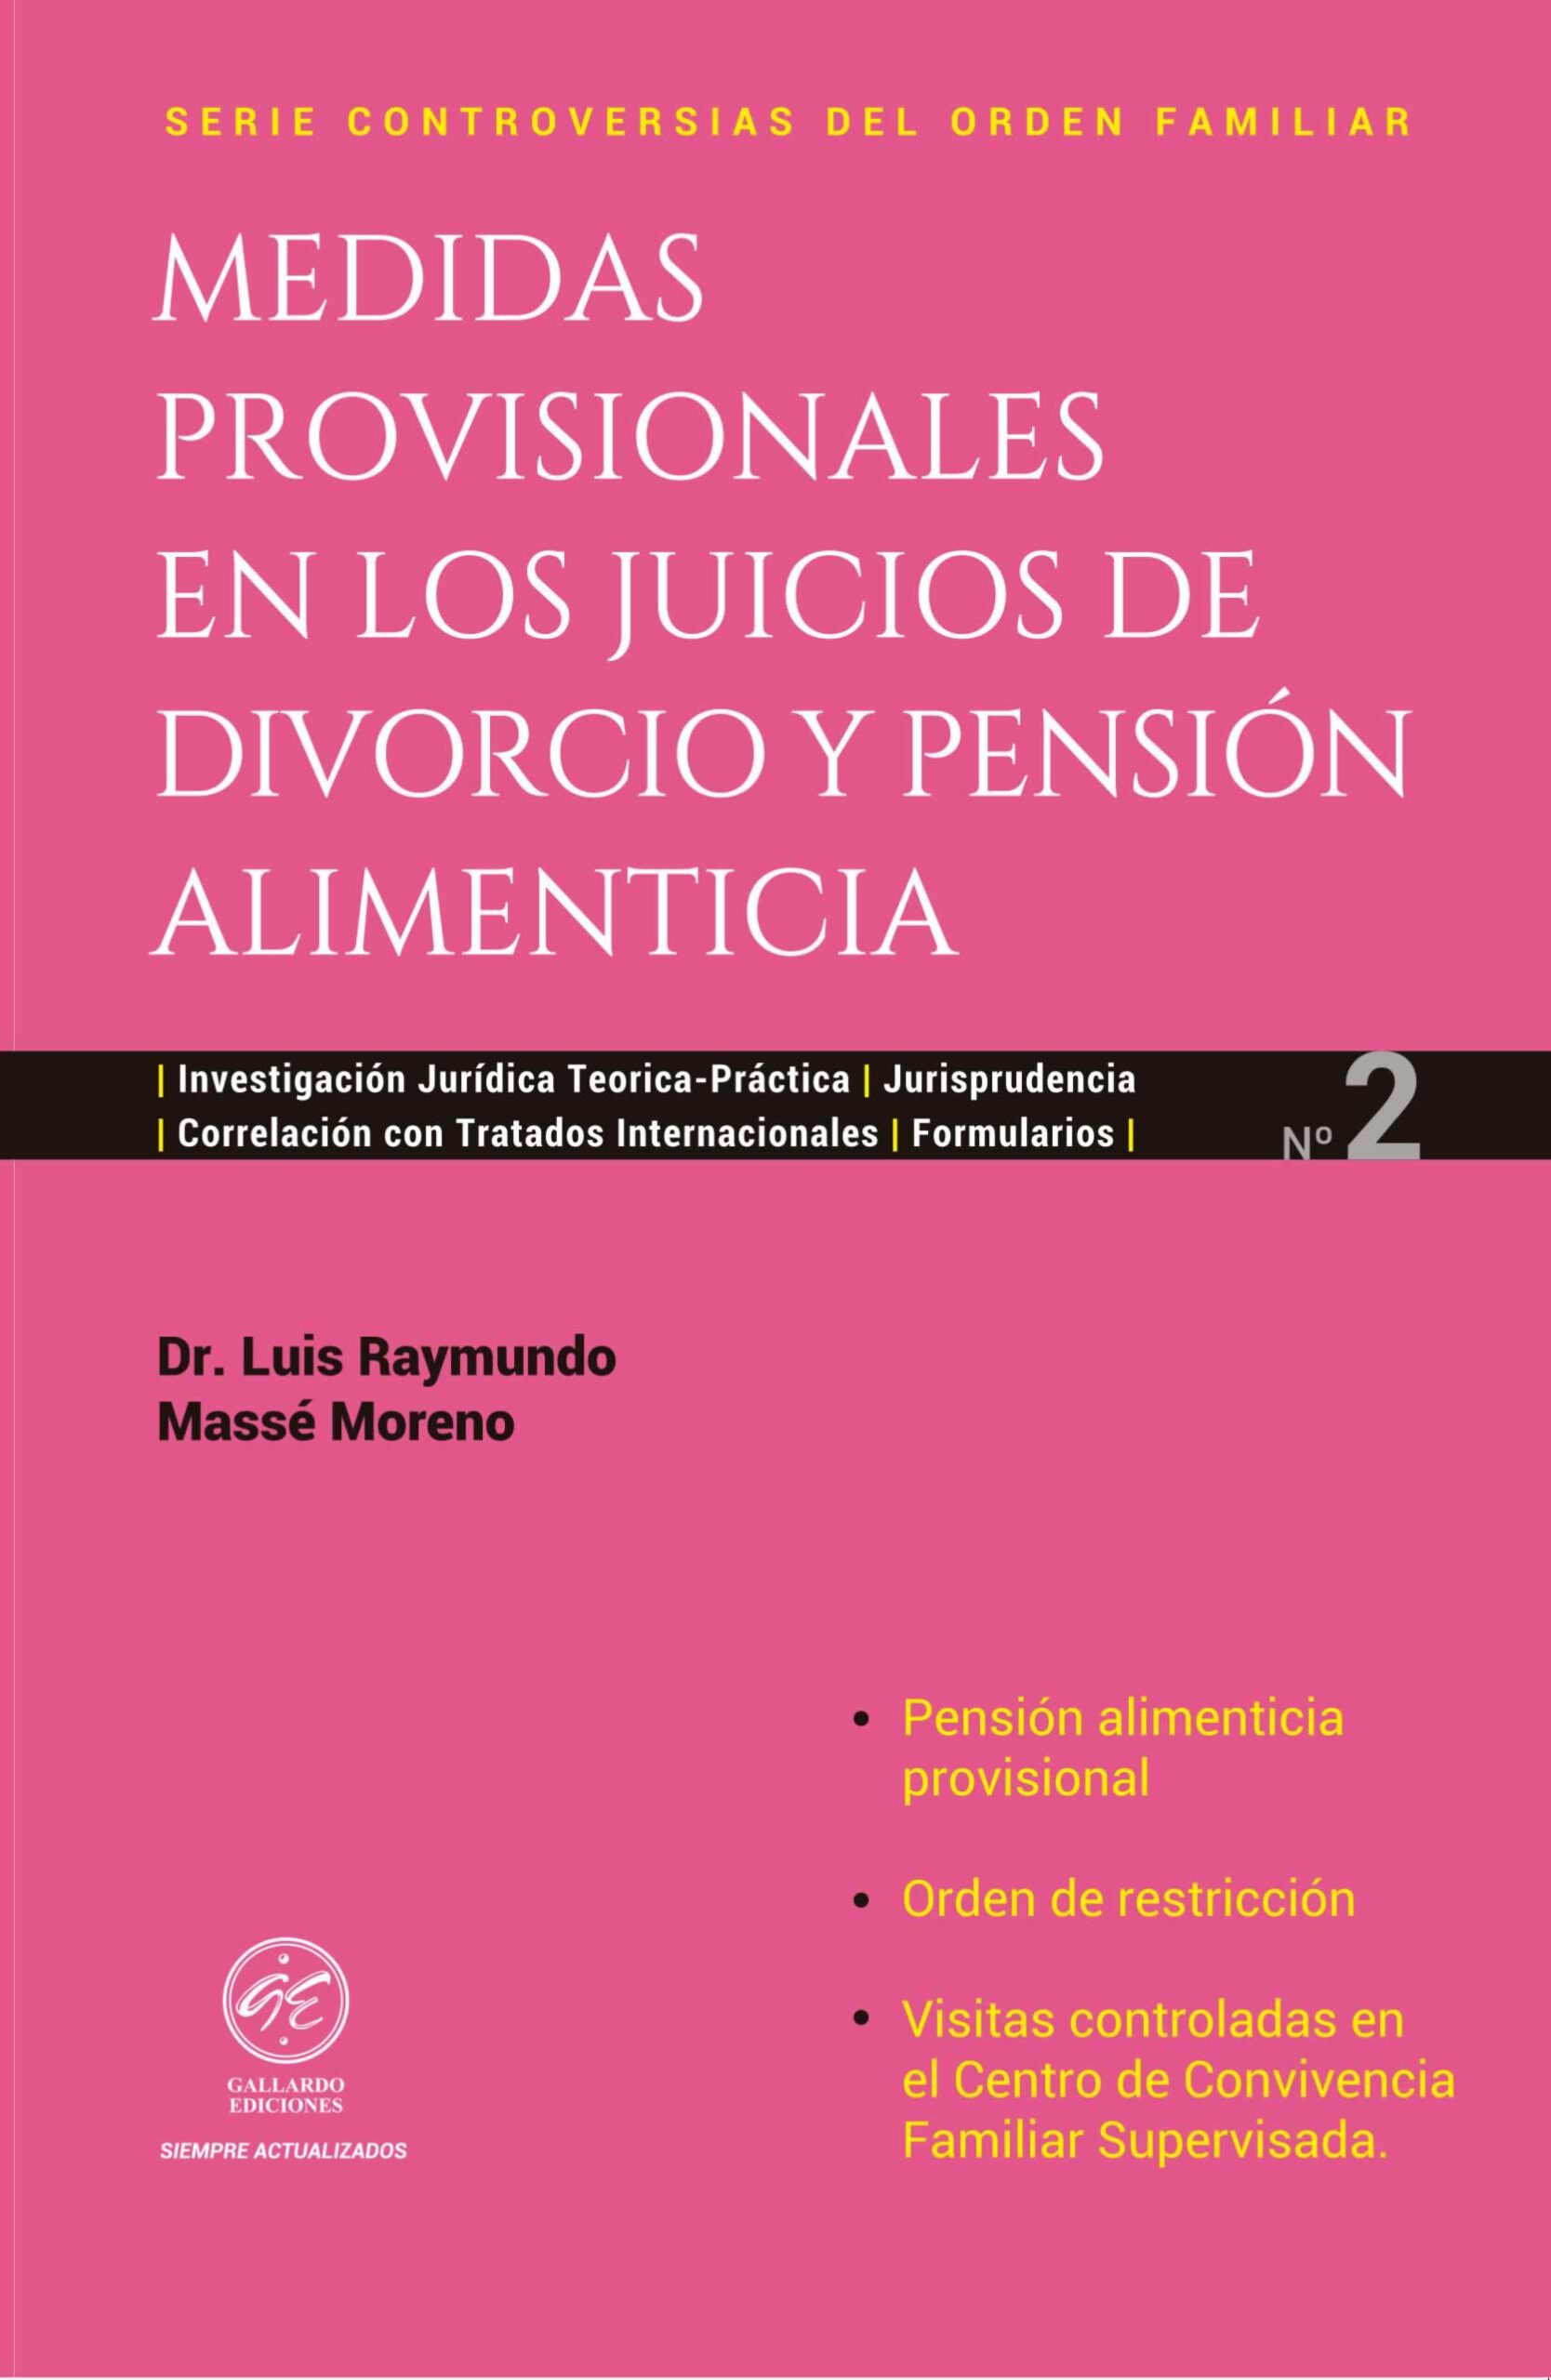 Medidas Provisionales en los Juicios de Divorcio y Pensión Alimenticia